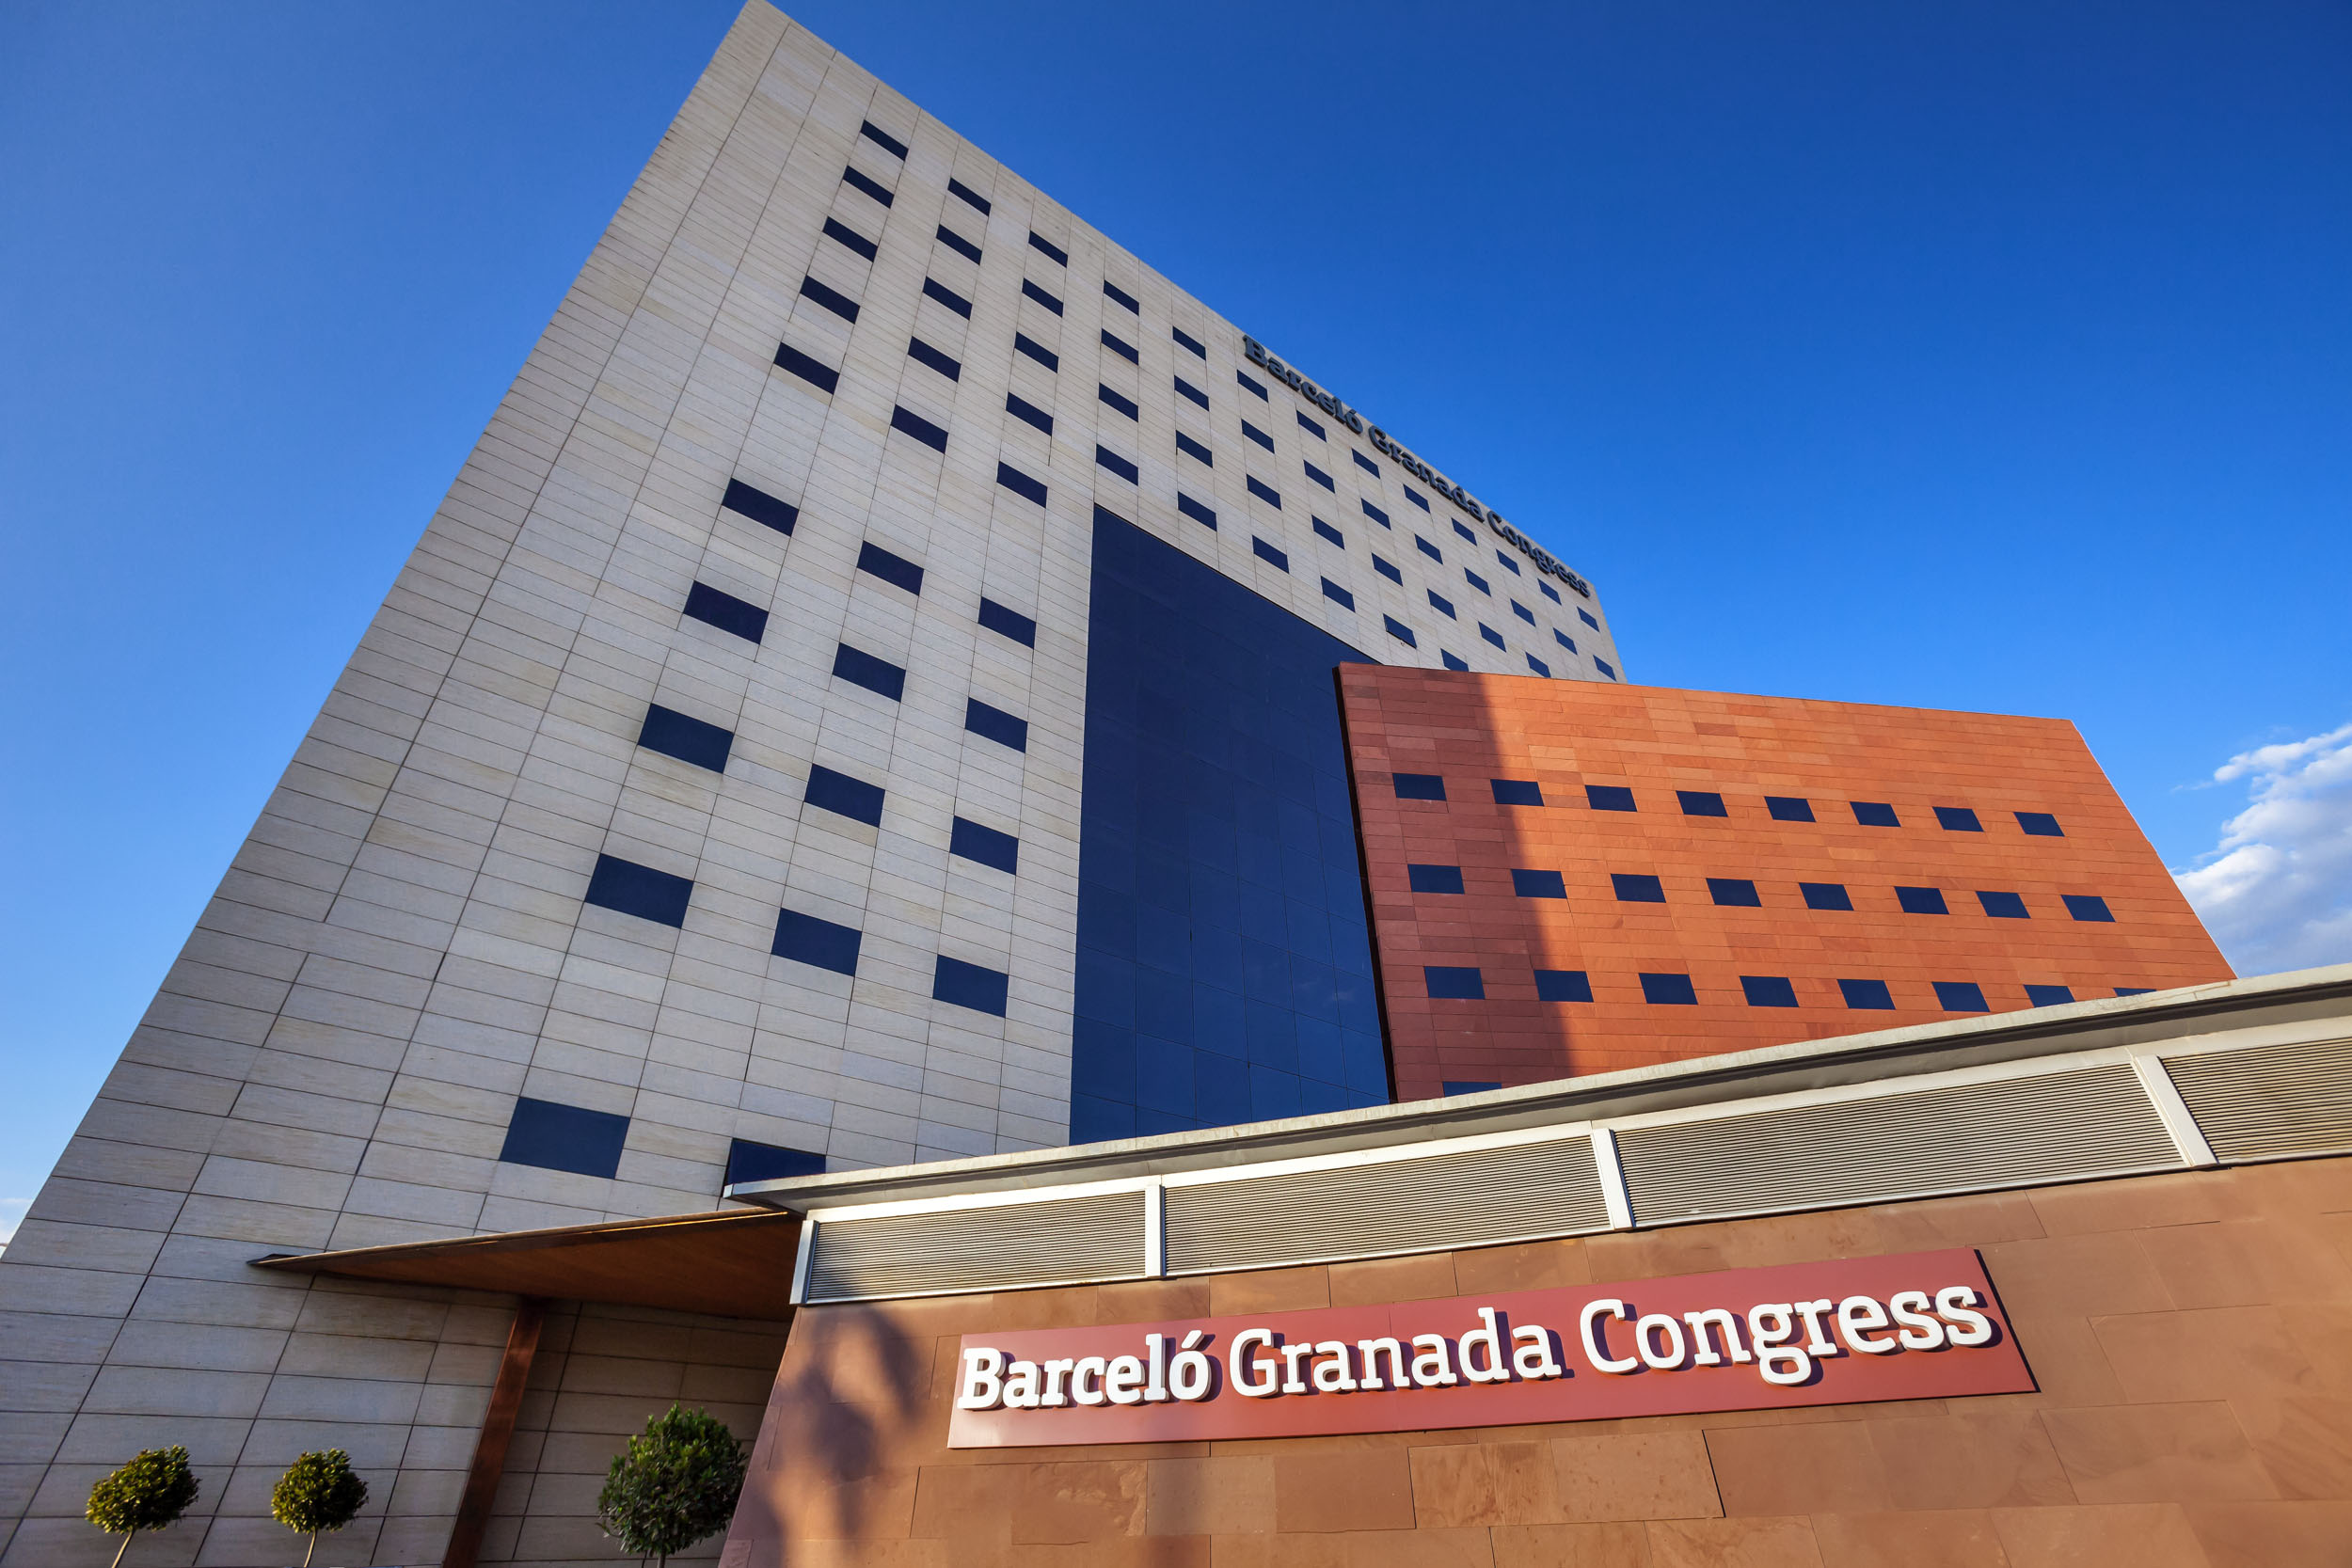 REUNIÓN ANUAL DE LA ASOCIACIÓN DE CARDIOLOGÍA DE LA SEC GRANADA 2021 - Alojamiento Barcelo Granada Congress